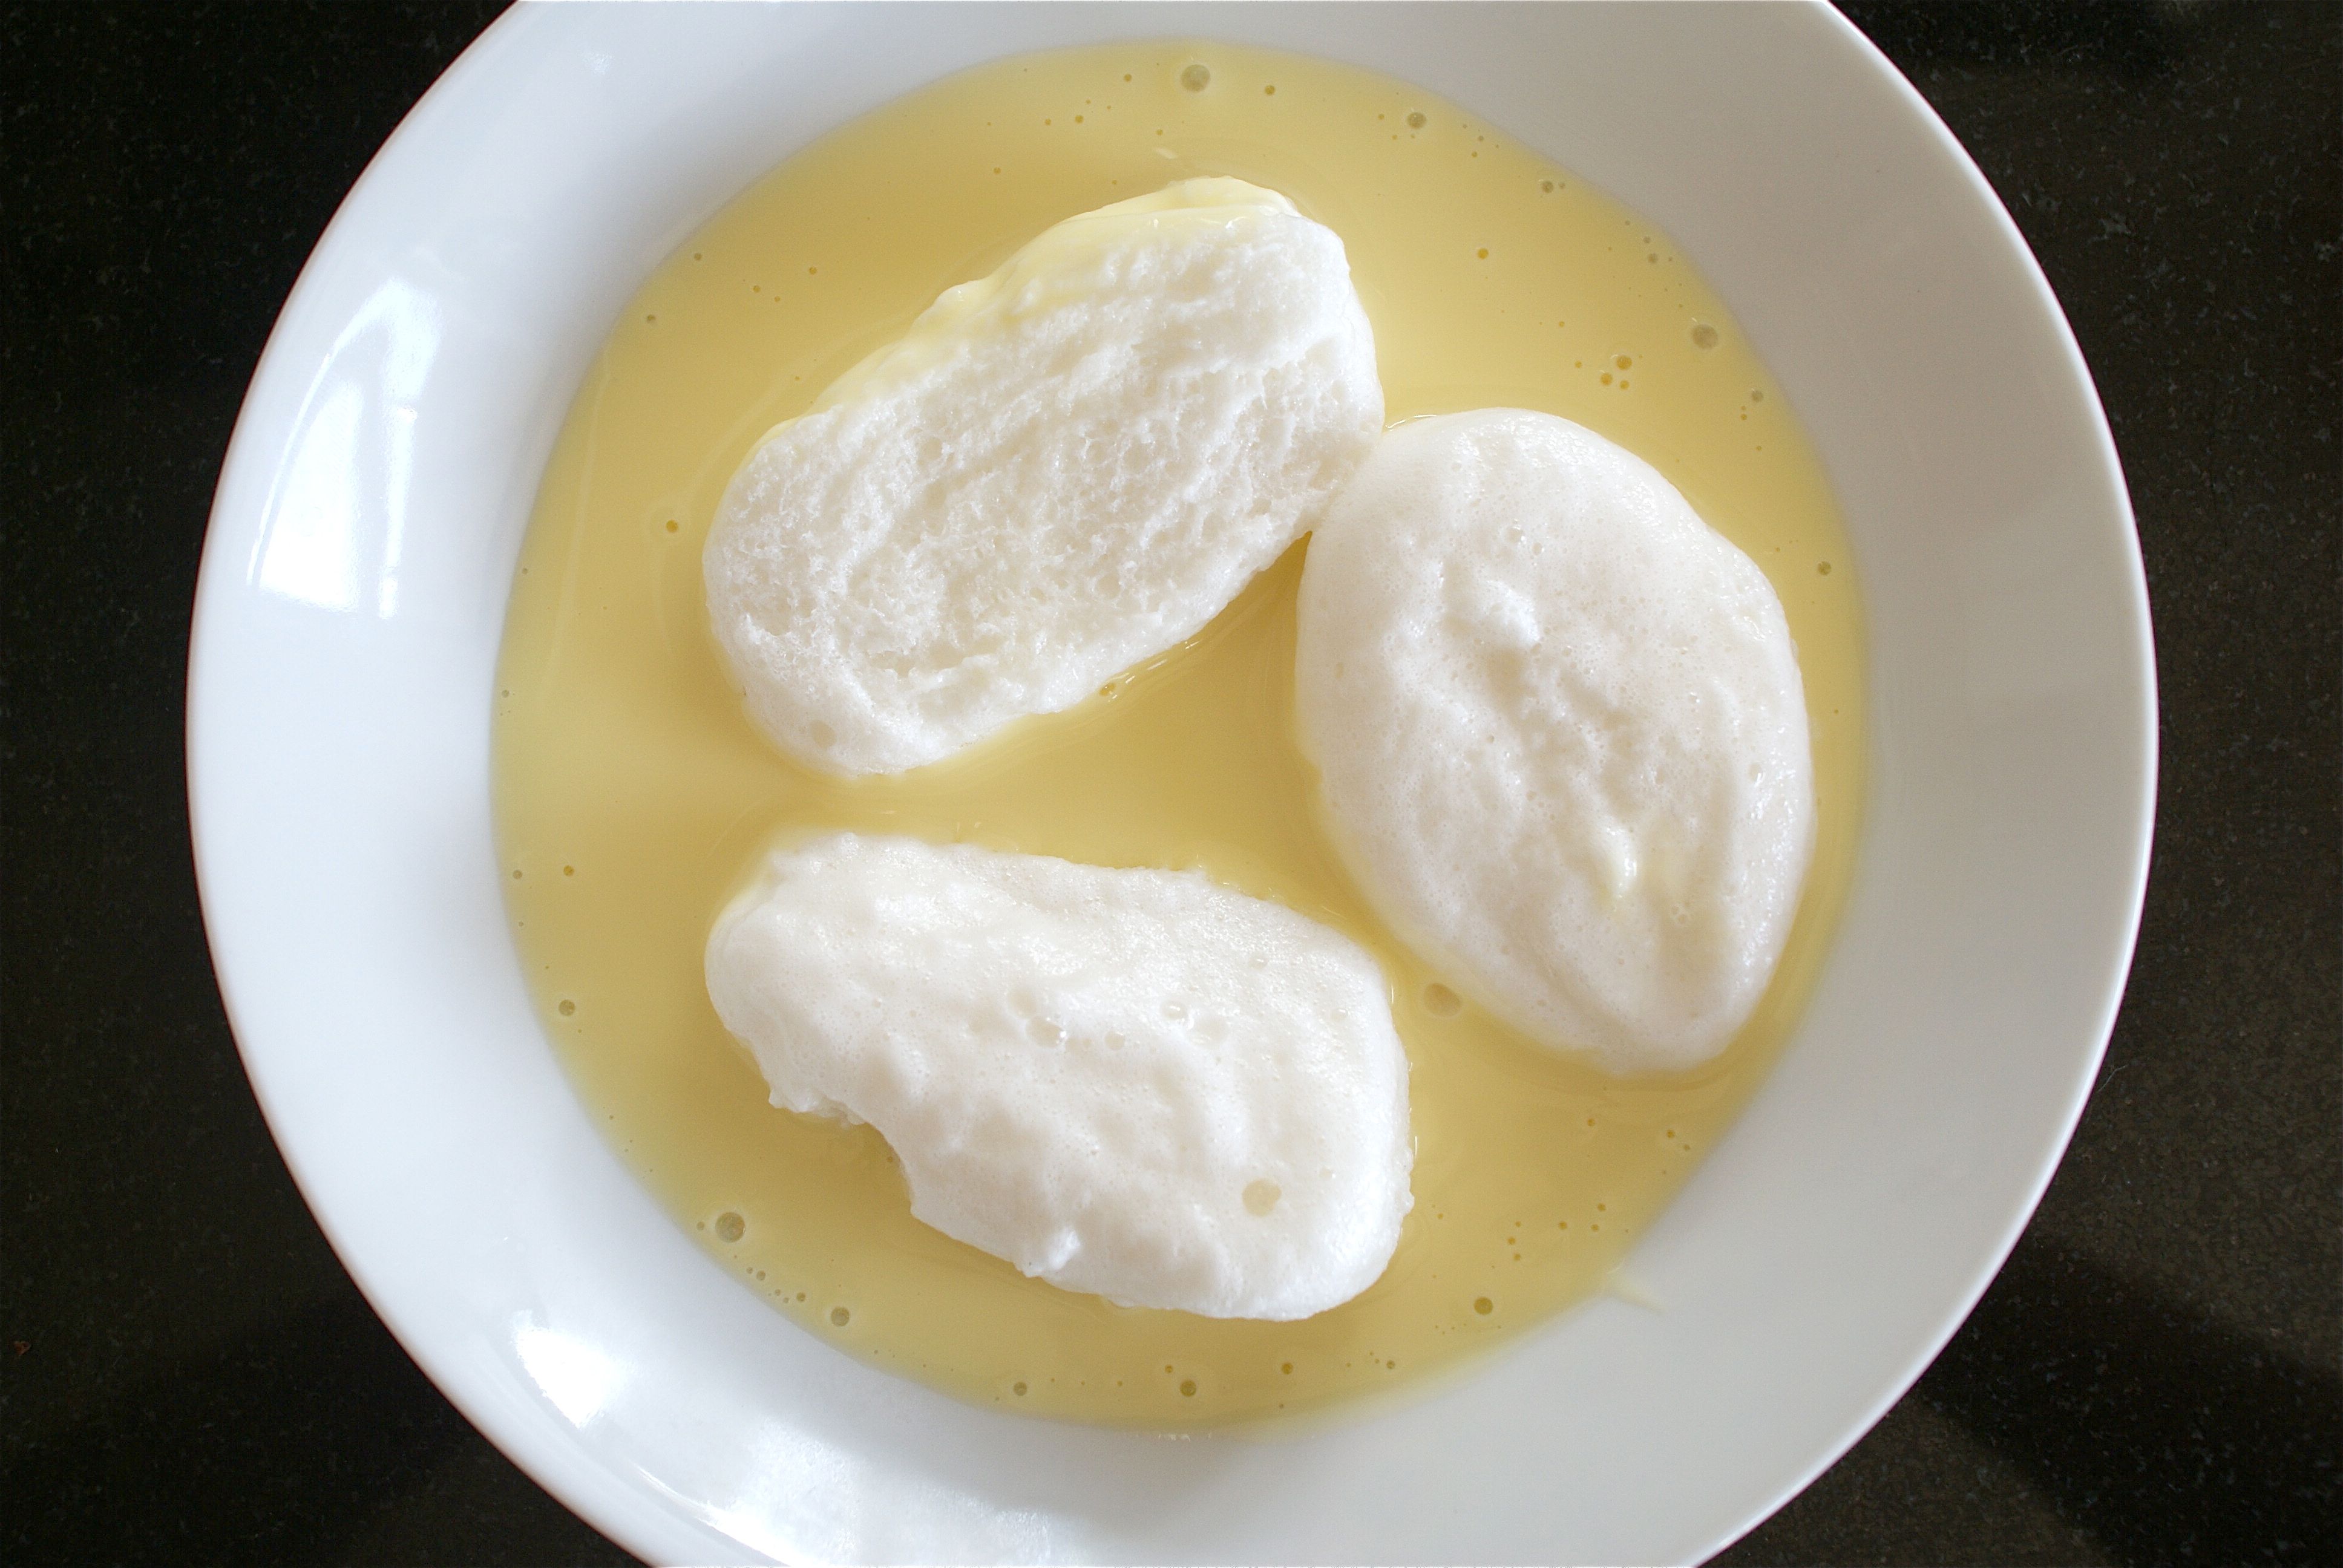 Classic Oeufs a la Neige Recipe (Snow Eggs)